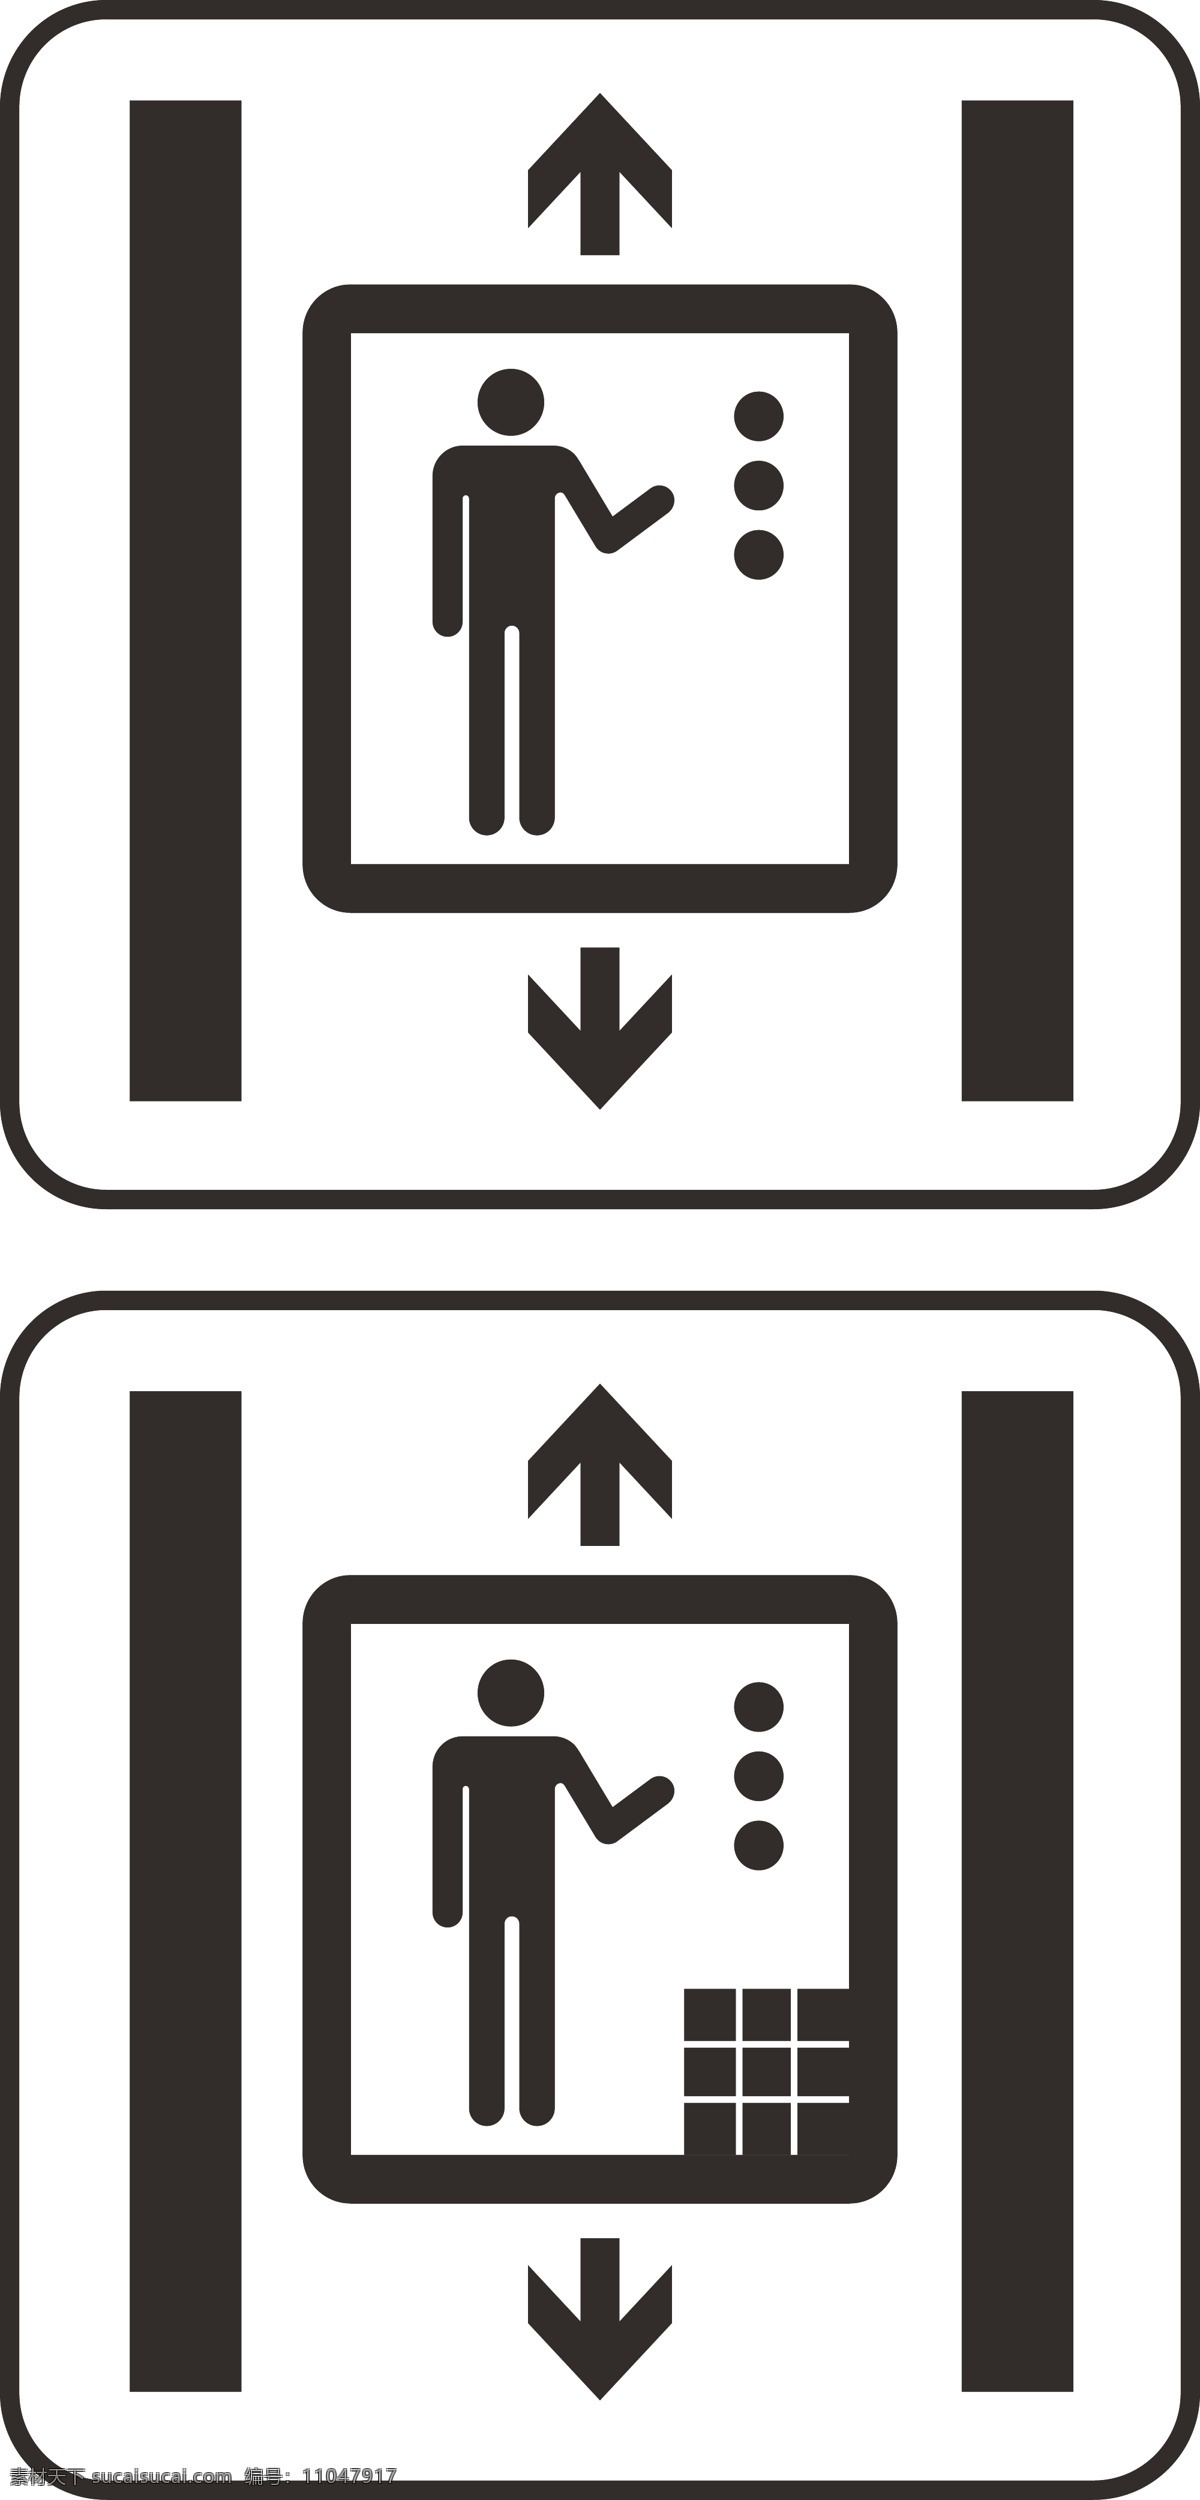 客梯 货梯图标 货梯 电梯 客货 客 货 标识设计 标志图标 公共标识标志